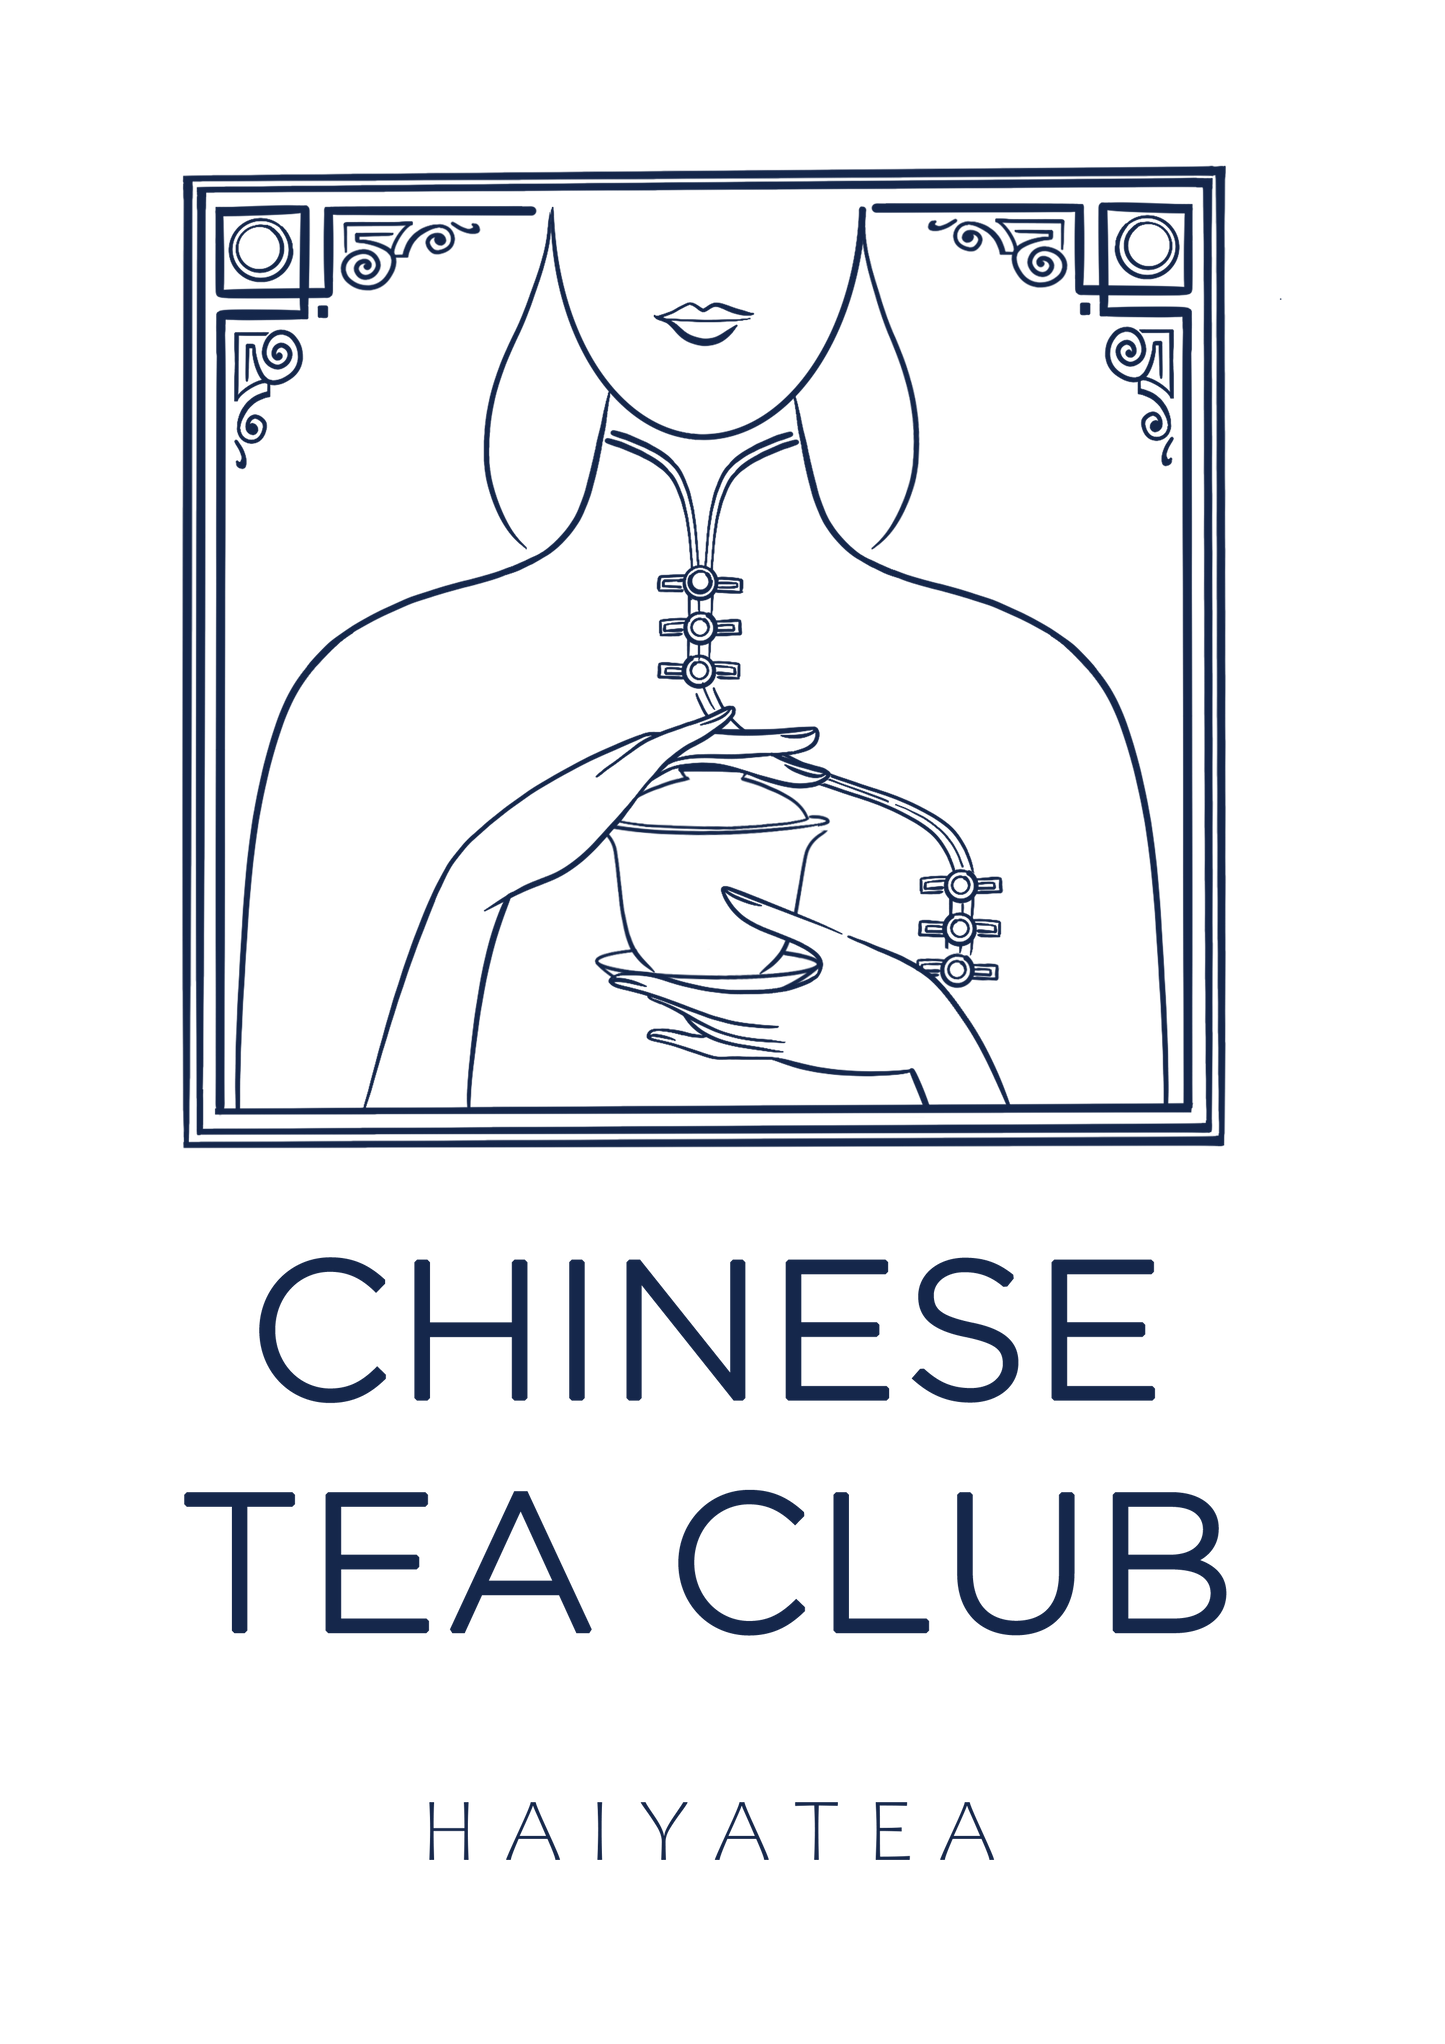 CHINESE TEA CLUB tote bag